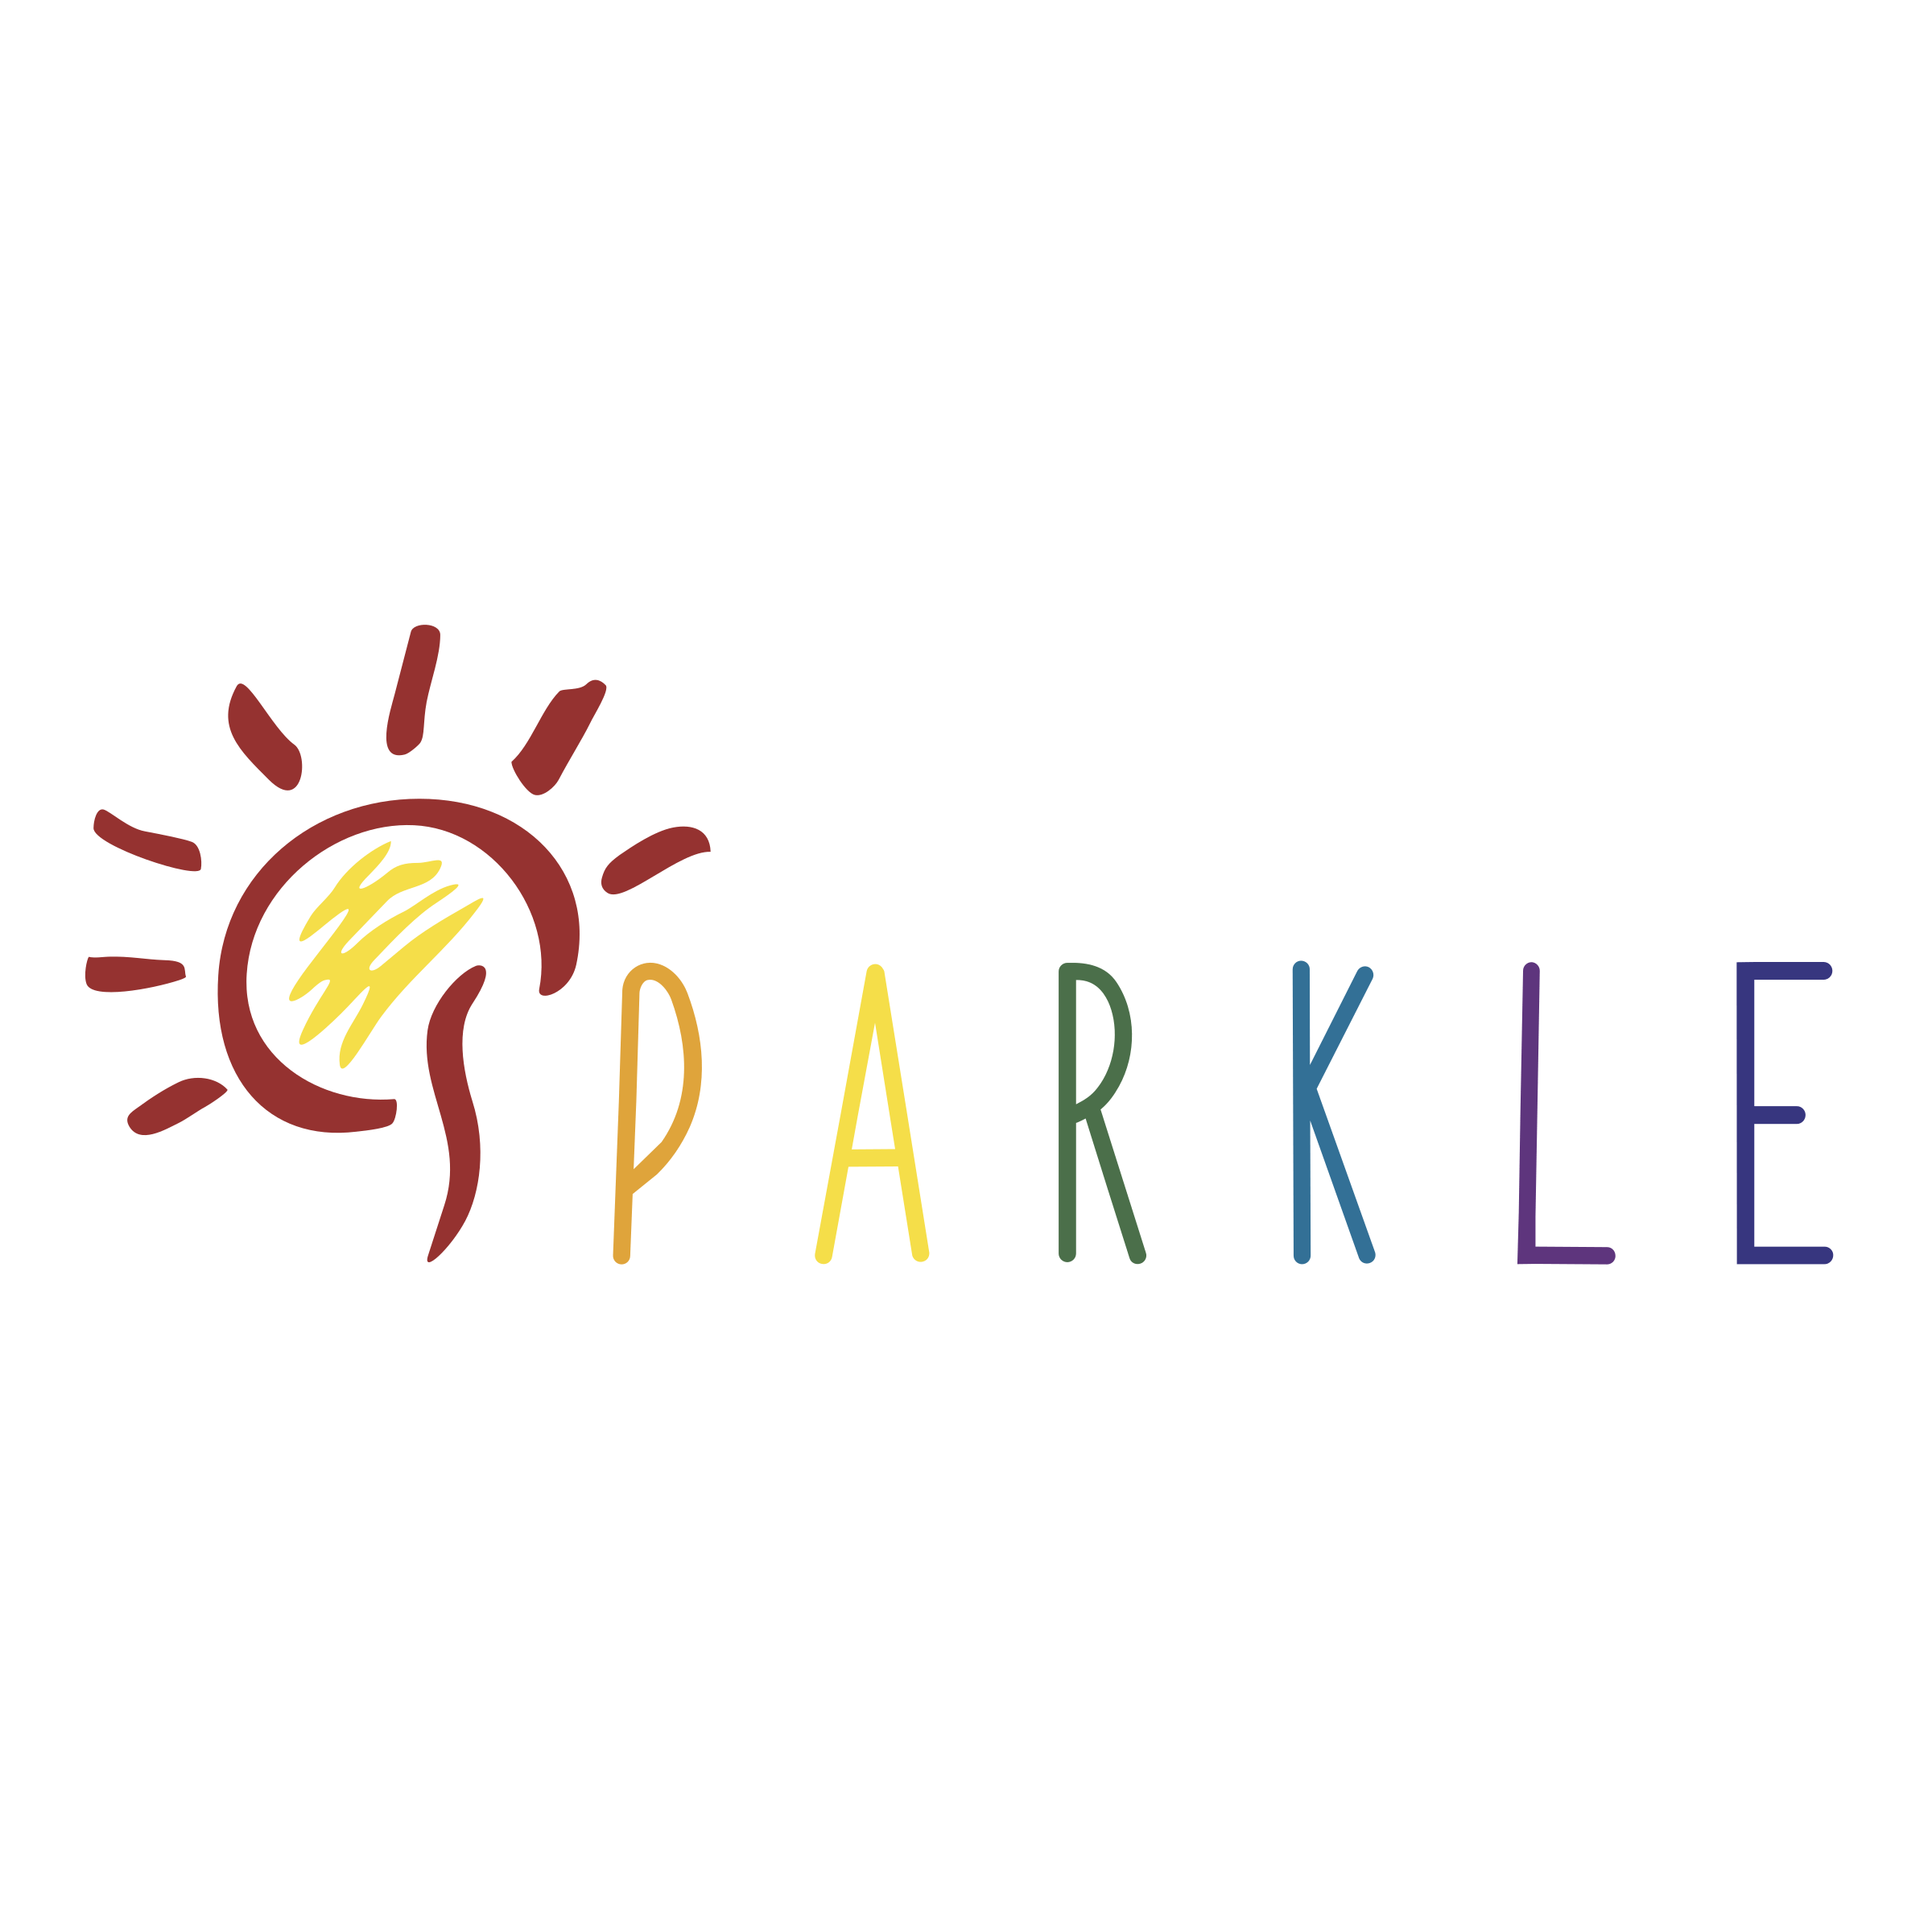 Sparkle Logo - Sparkle Logo PNG Transparent & SVG Vector